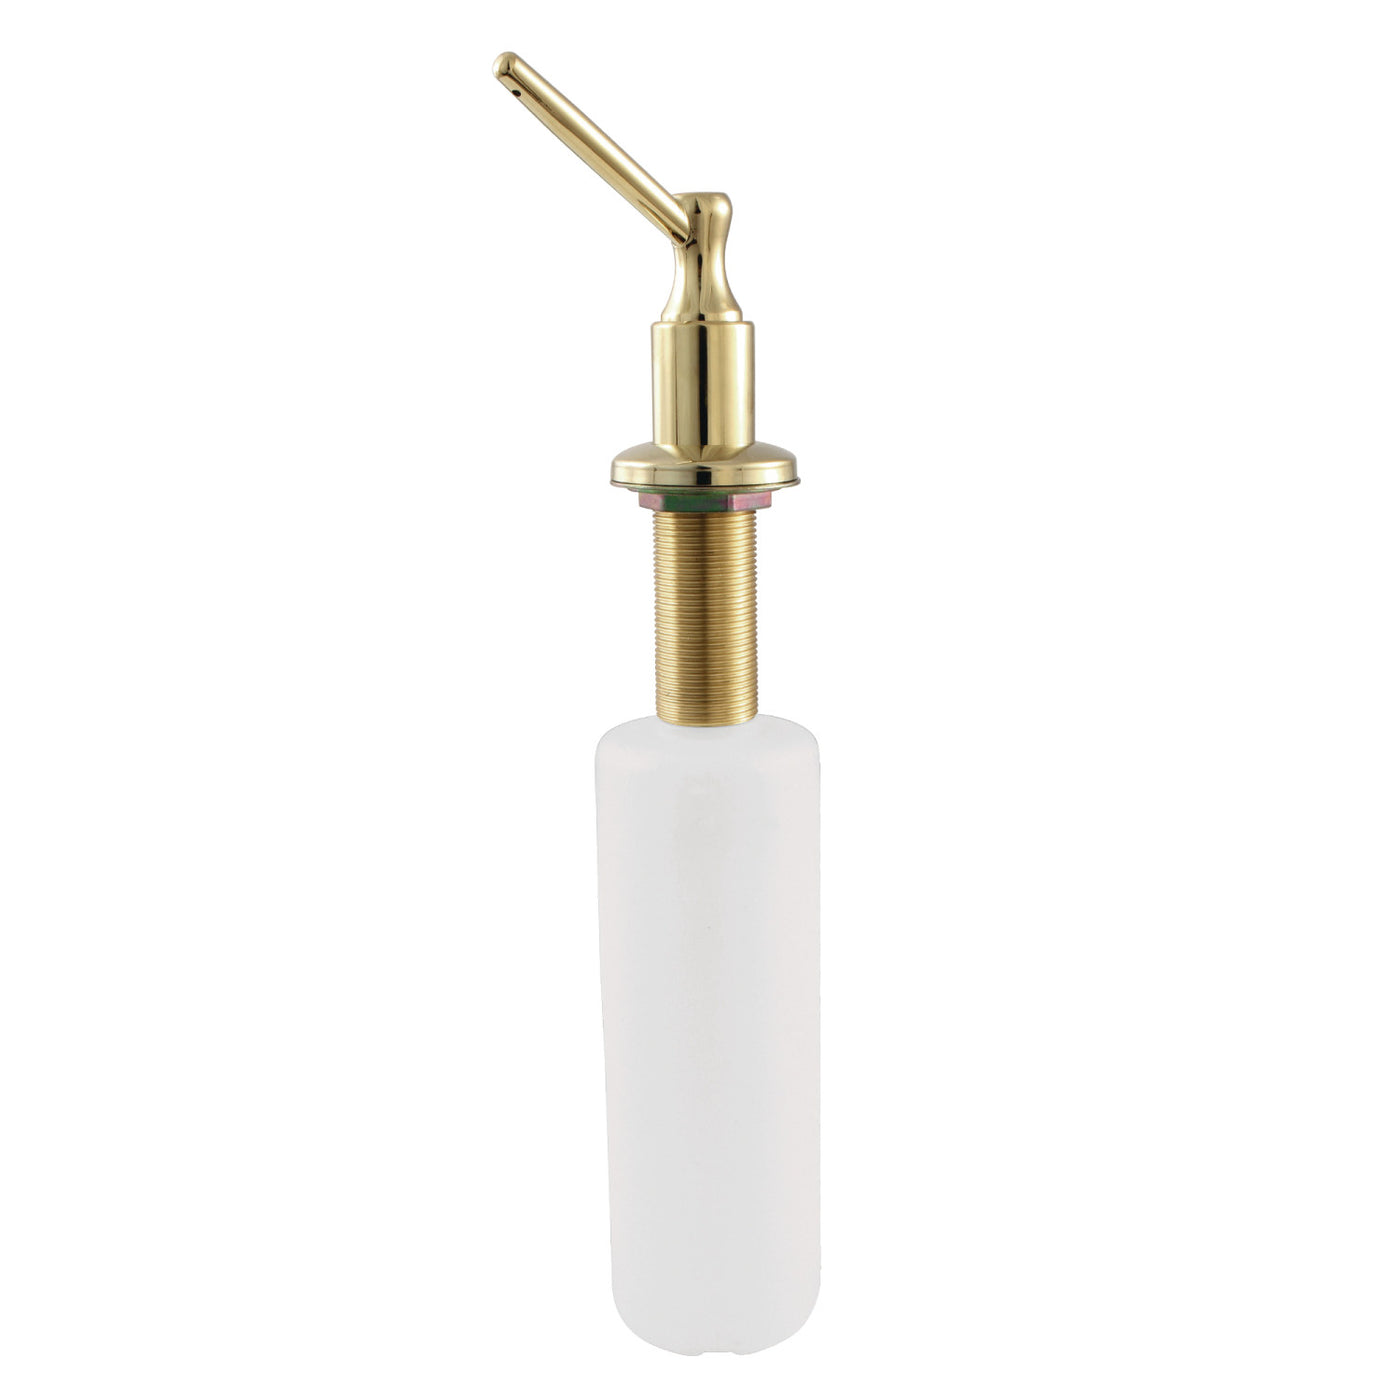 Elements of Design ESD3602 Soap Dispenser, Polished Brass